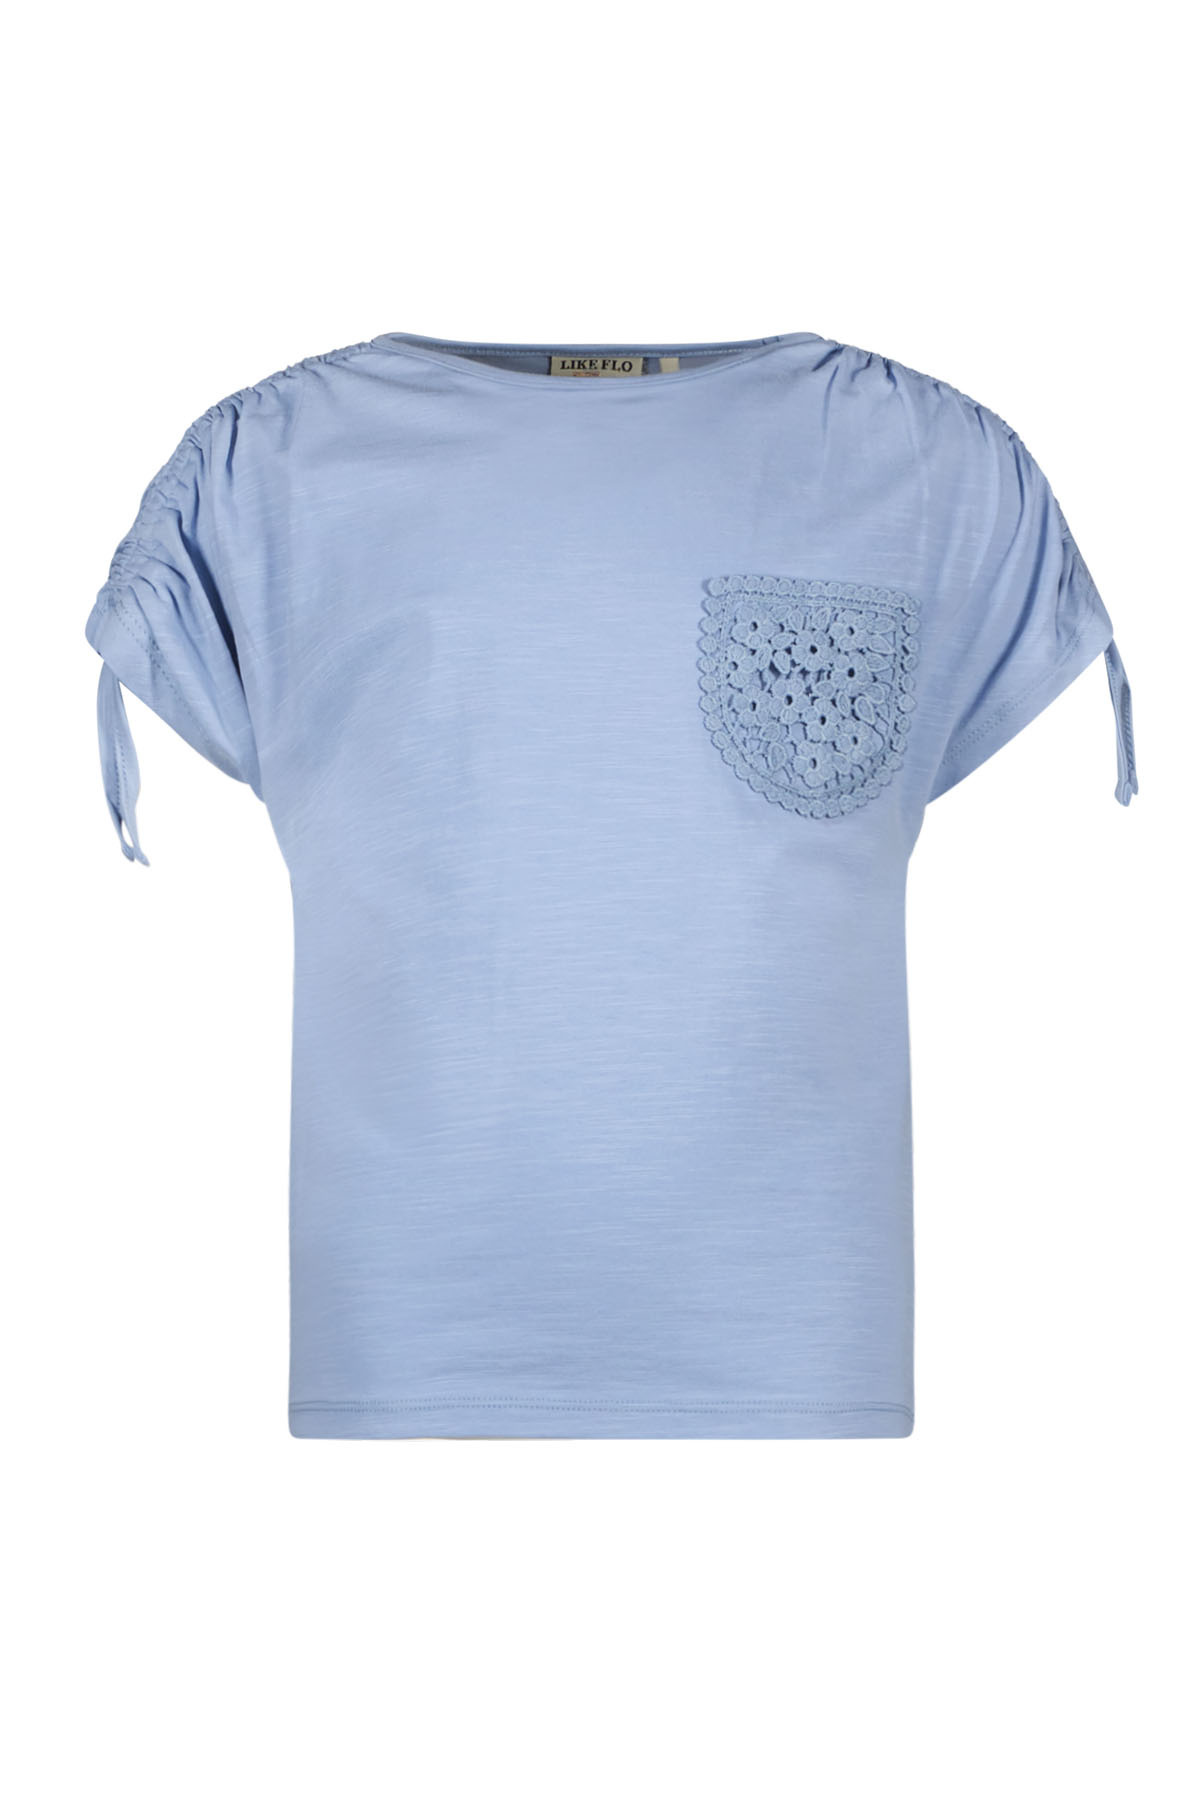 Like Flo F402-5405 Meisjes T-shirt - Ice blue - Maat 122